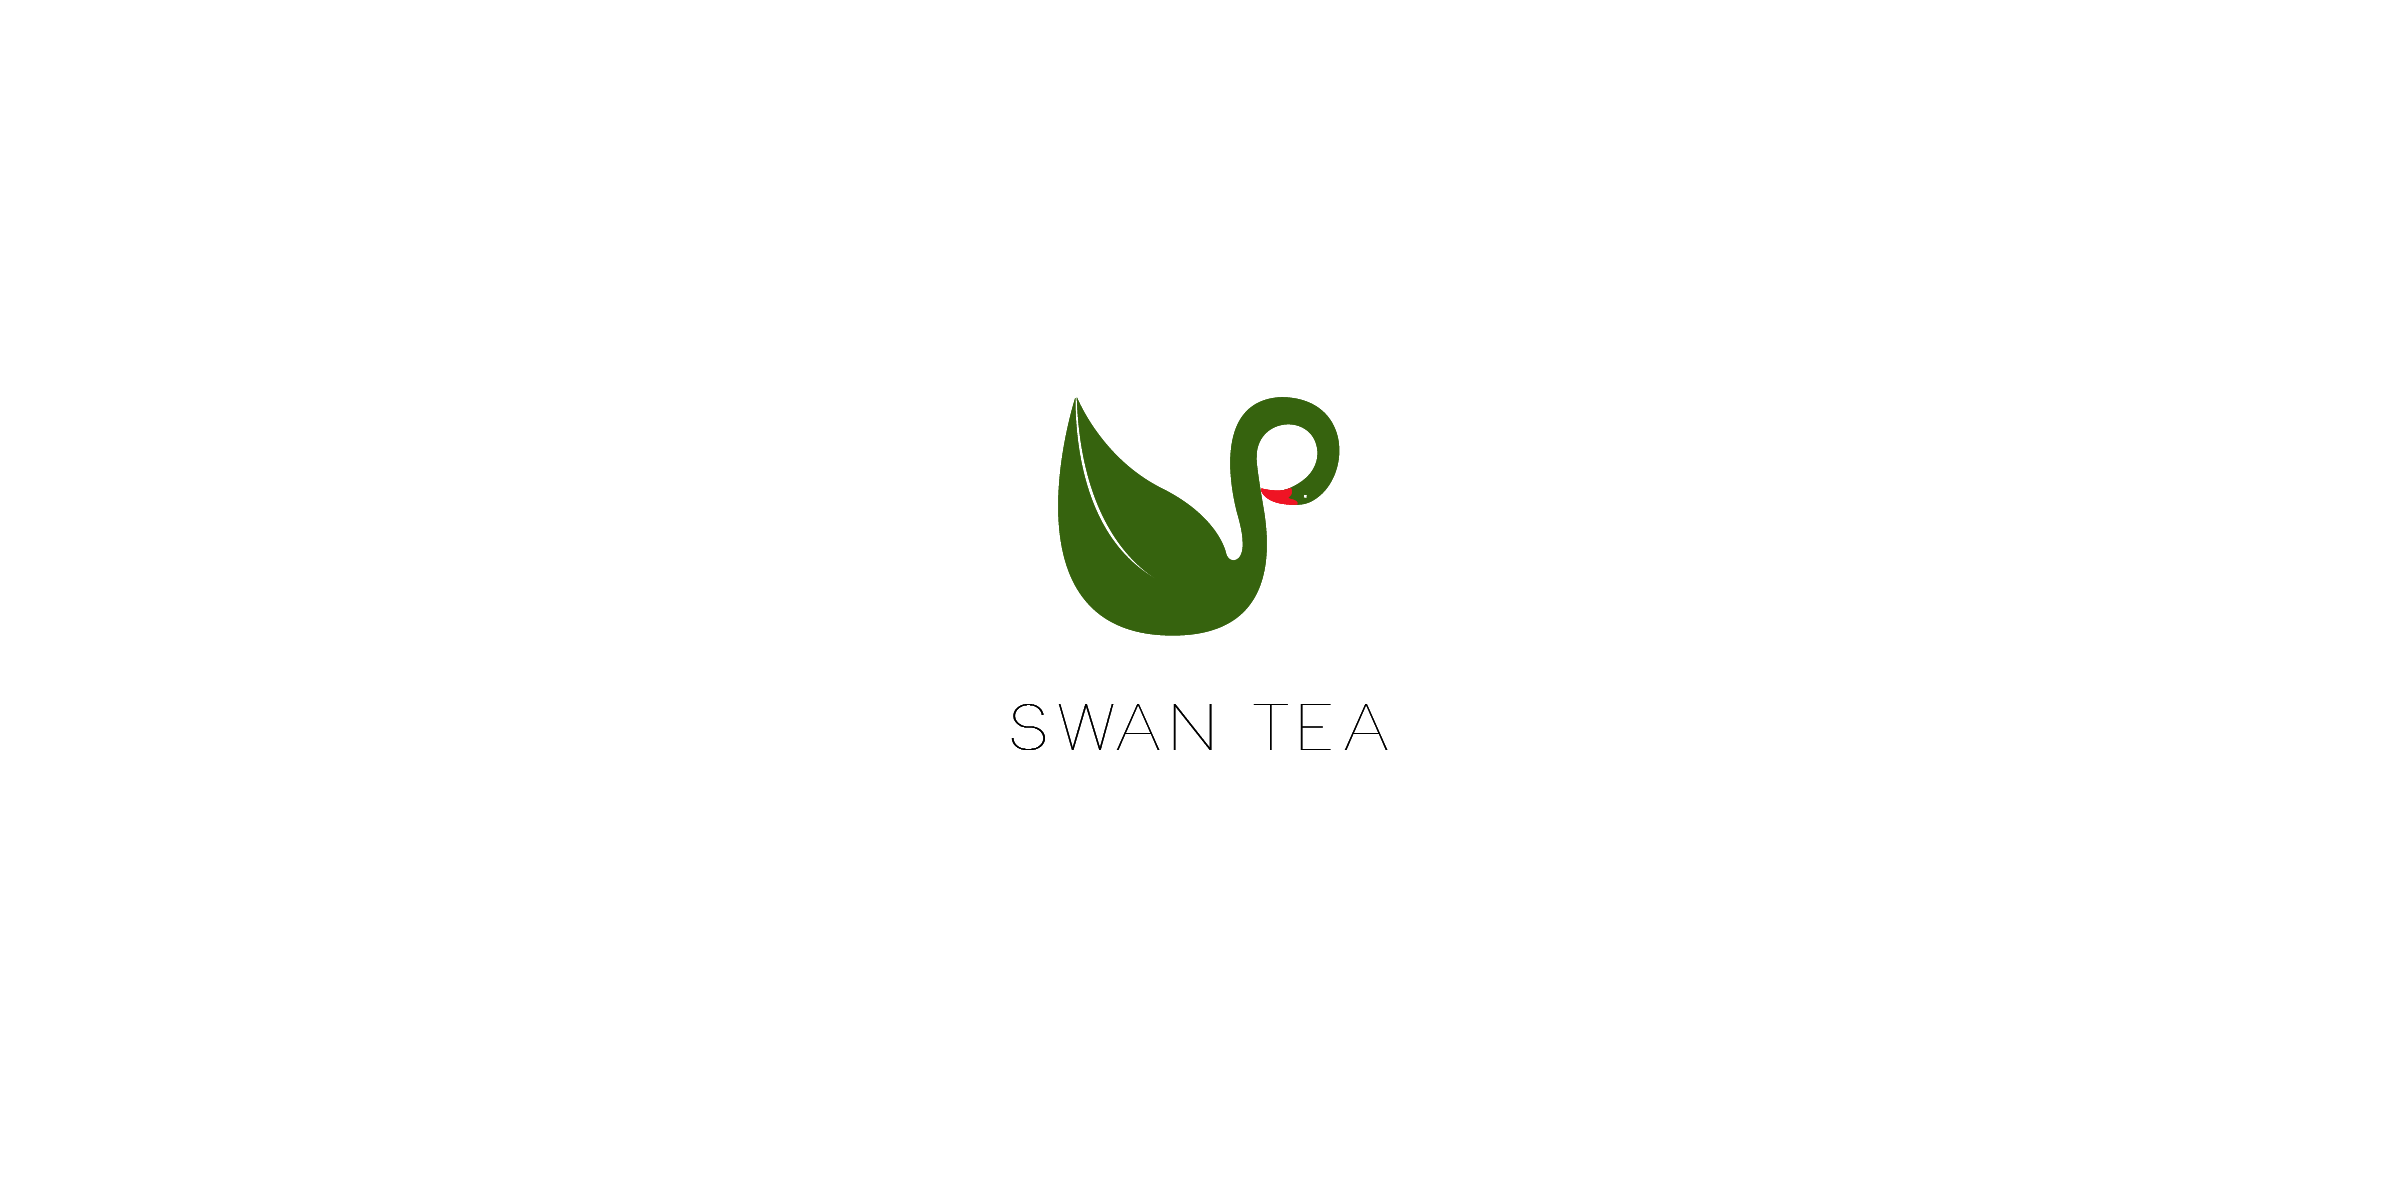 Herbal tea company needs logo design | 42 Logo Designs for The U Tea